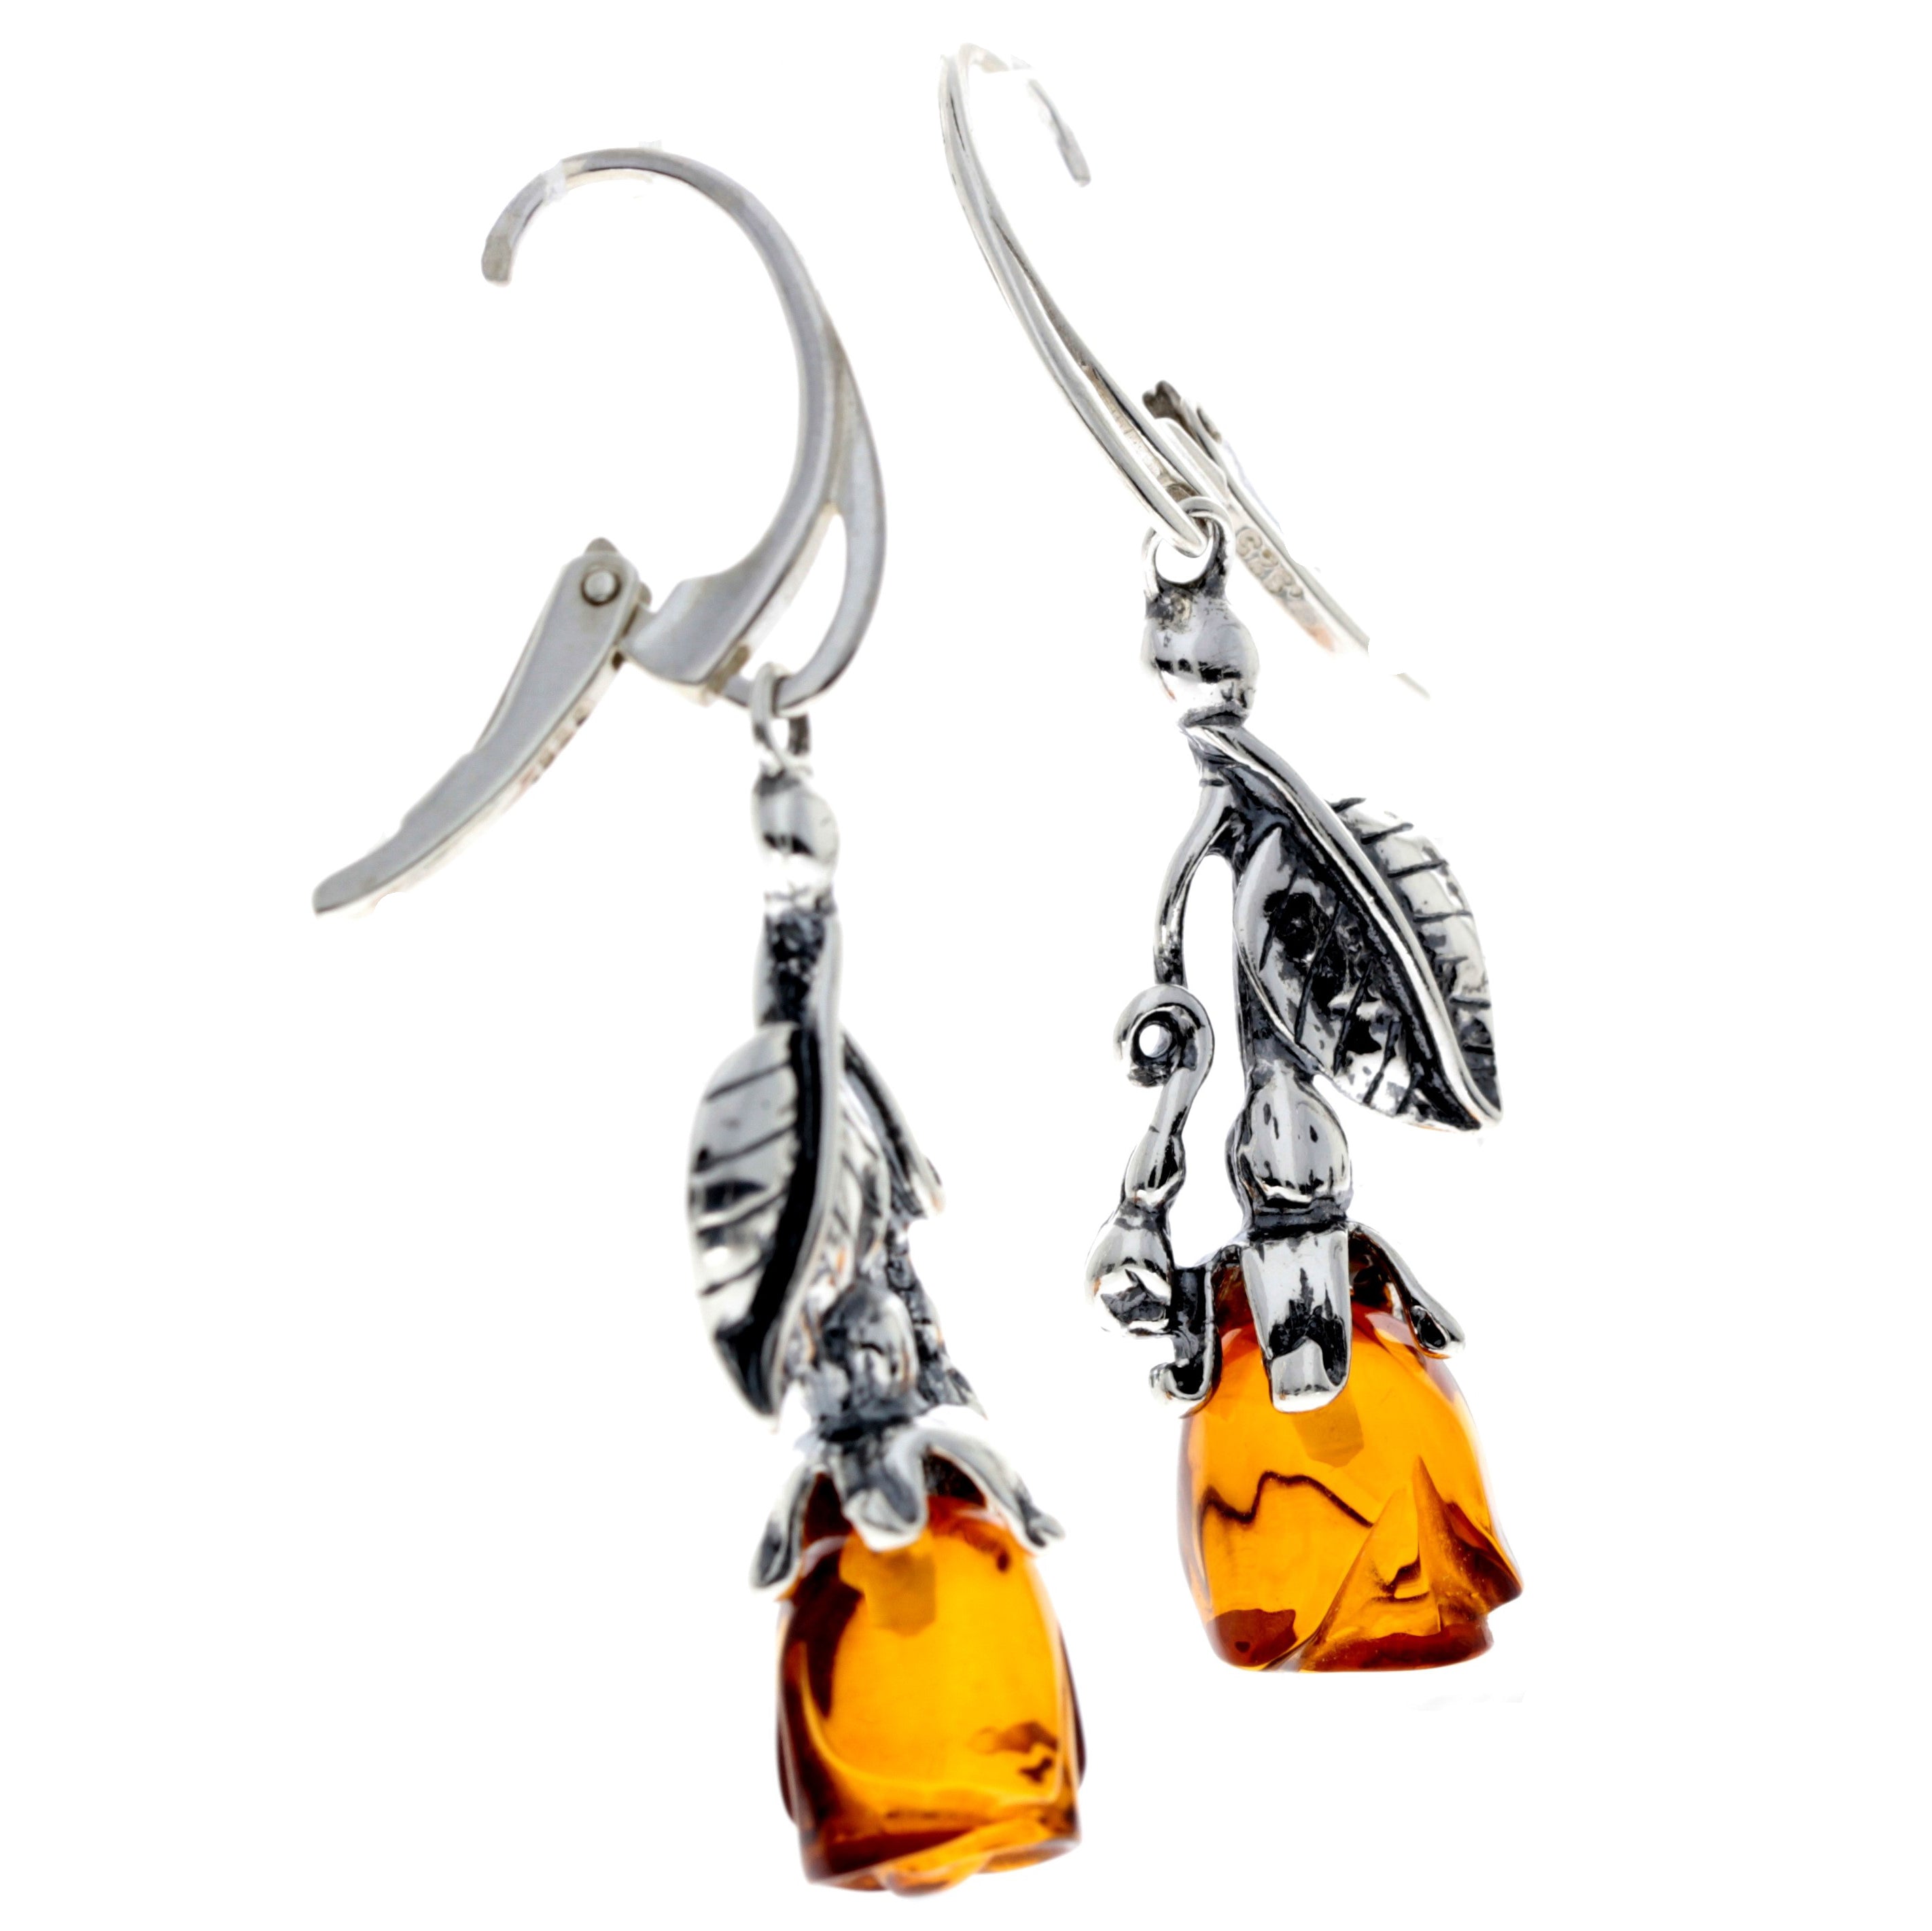 925 Sterling Silver & Genuine Baltic Amber Rose Drop Earrings - 8320